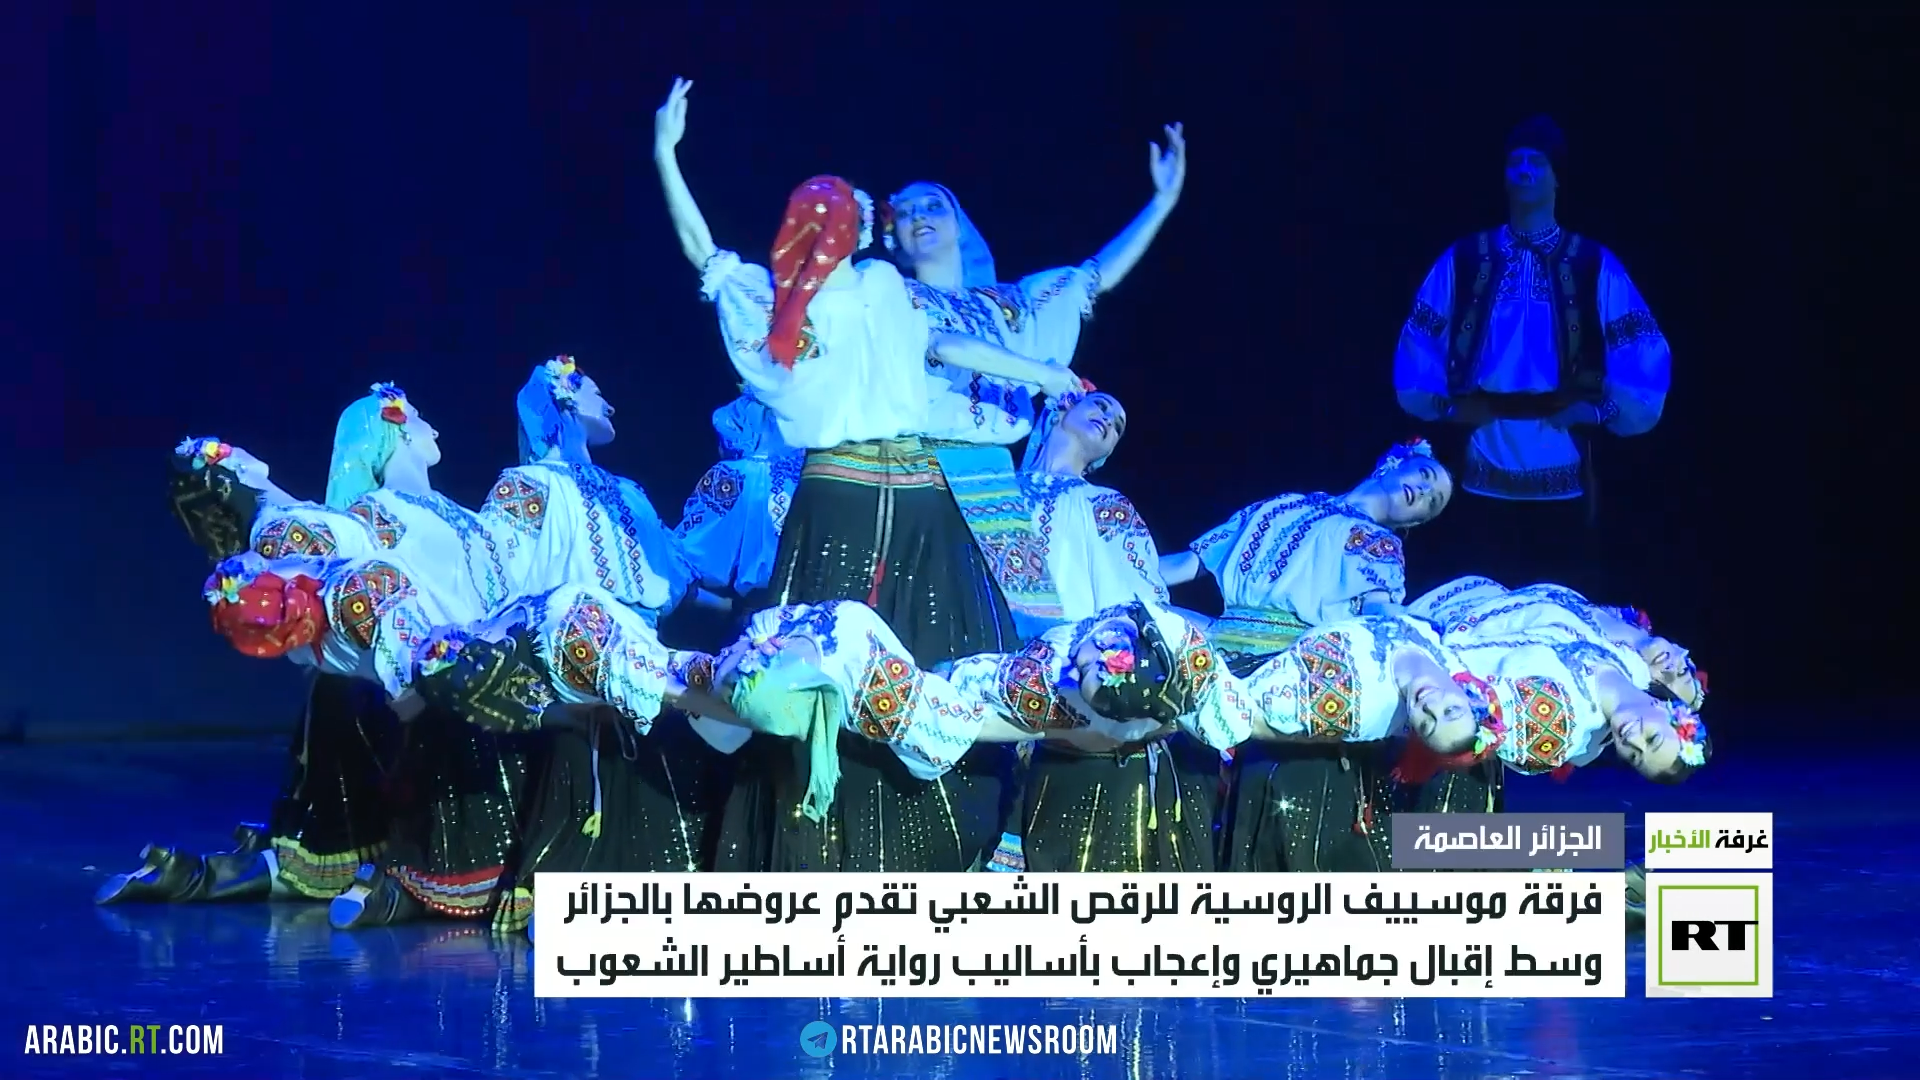 فرقة مويسييف الروسية للرقص الشعبي تقدم عروضها بالجزائر